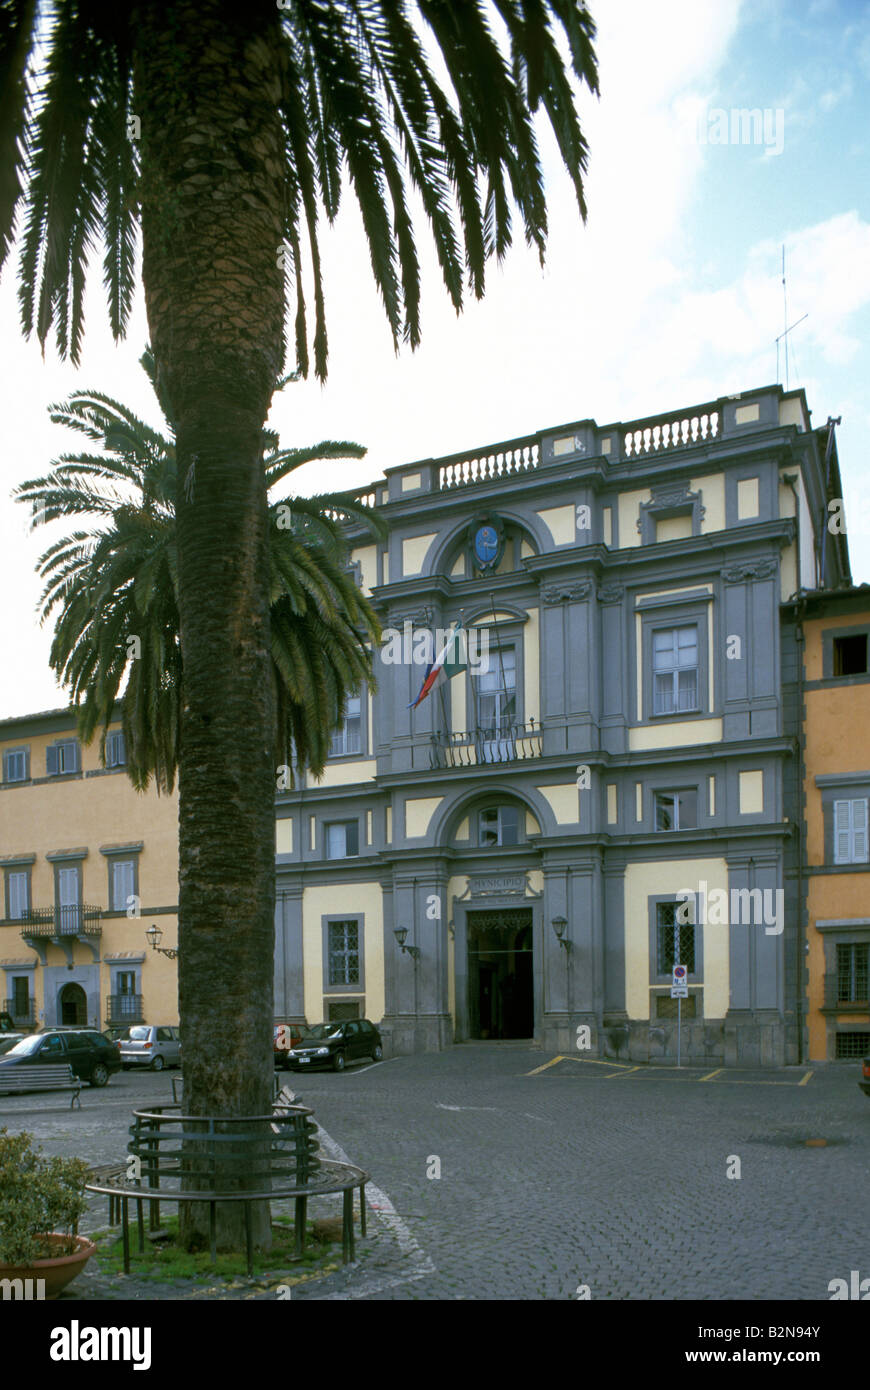 3 novembre square and town hall, bracciano, italy Stock Photo